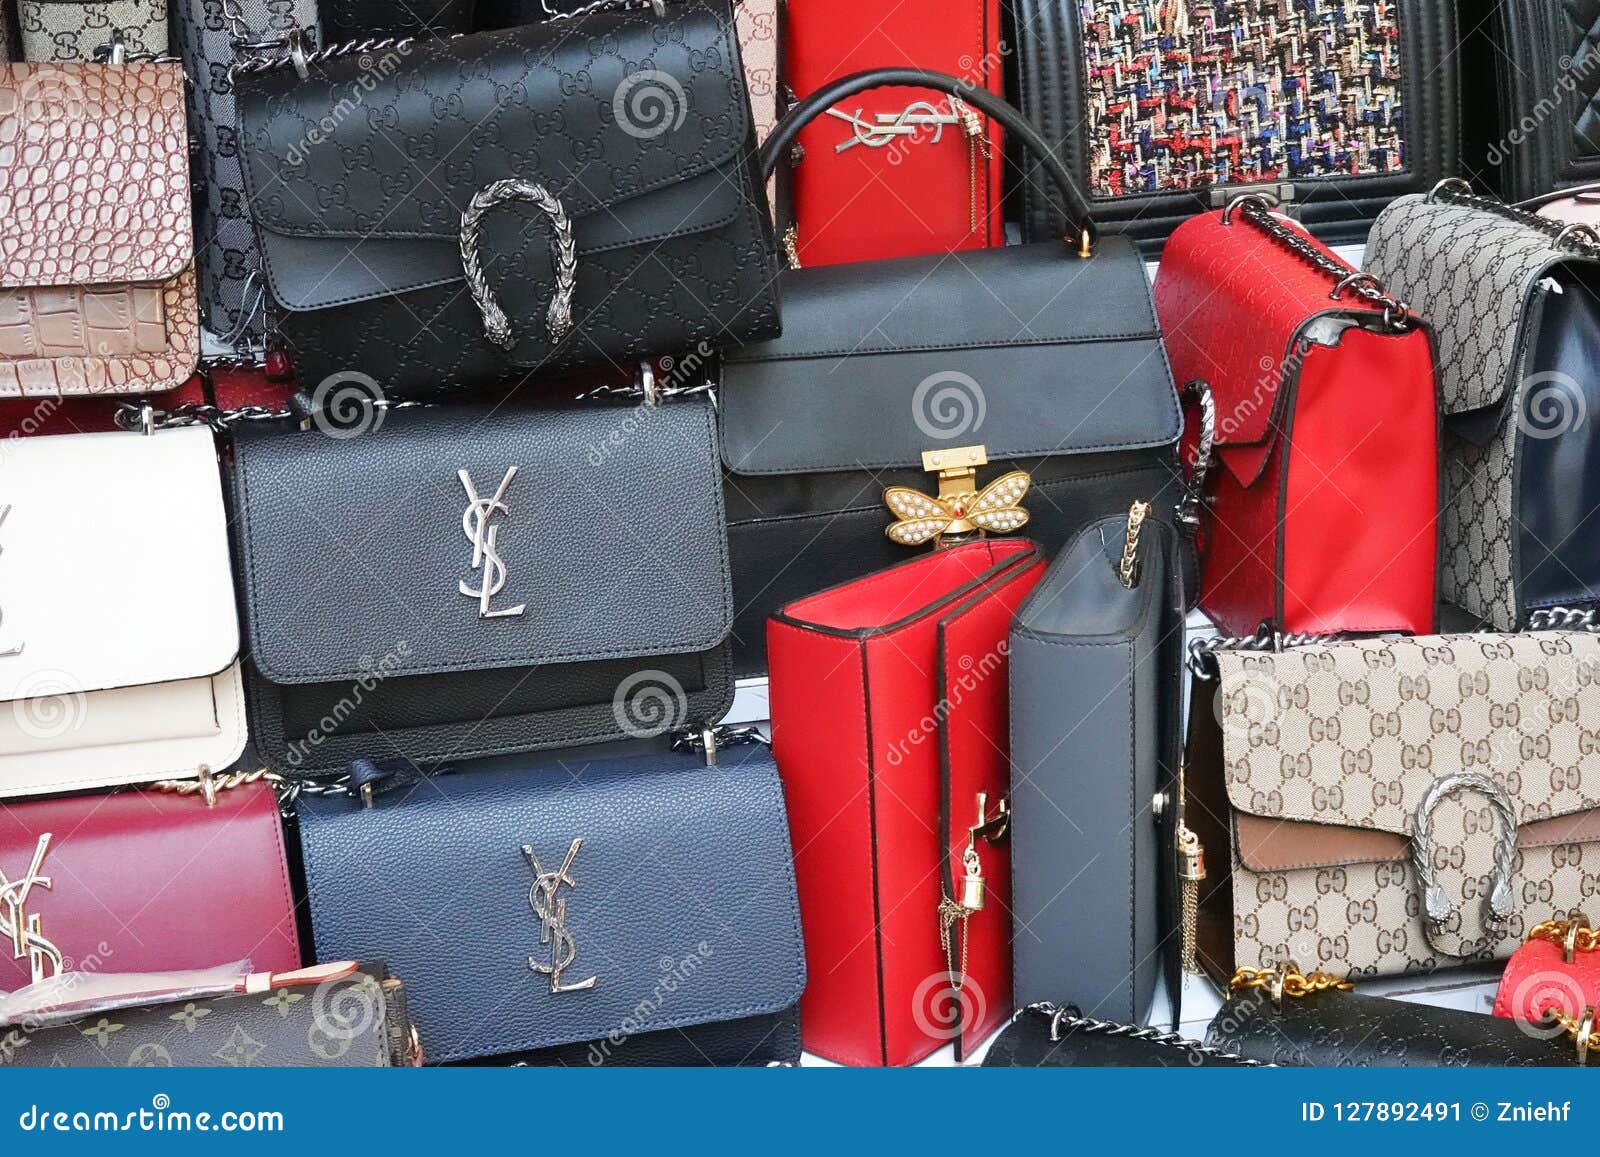 Louis Vuitton Messenger Bags At Lowest Price - Dilli Bazar